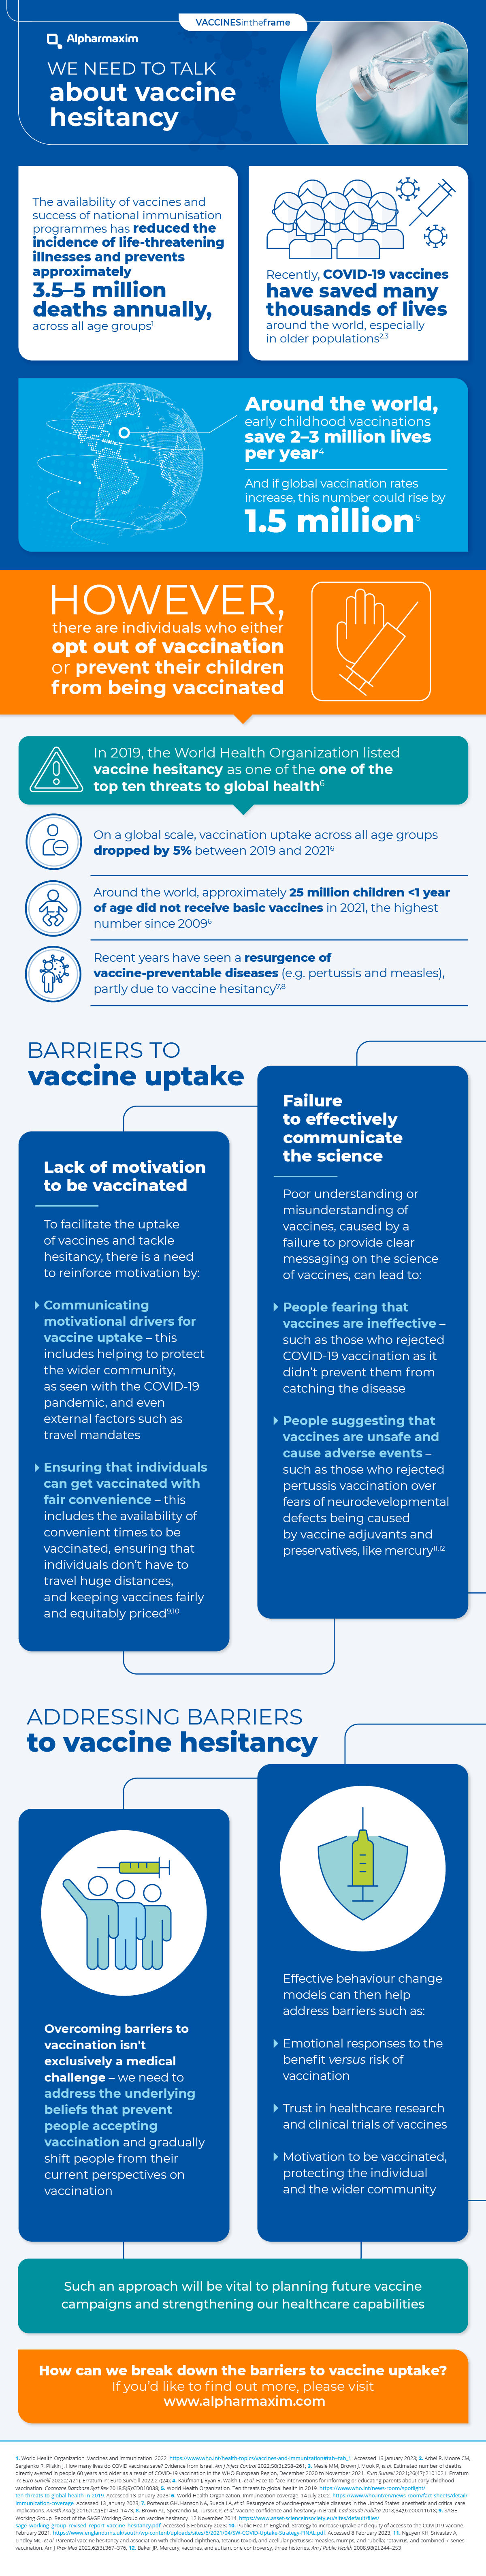 Vaccine Hesitancy Infographic